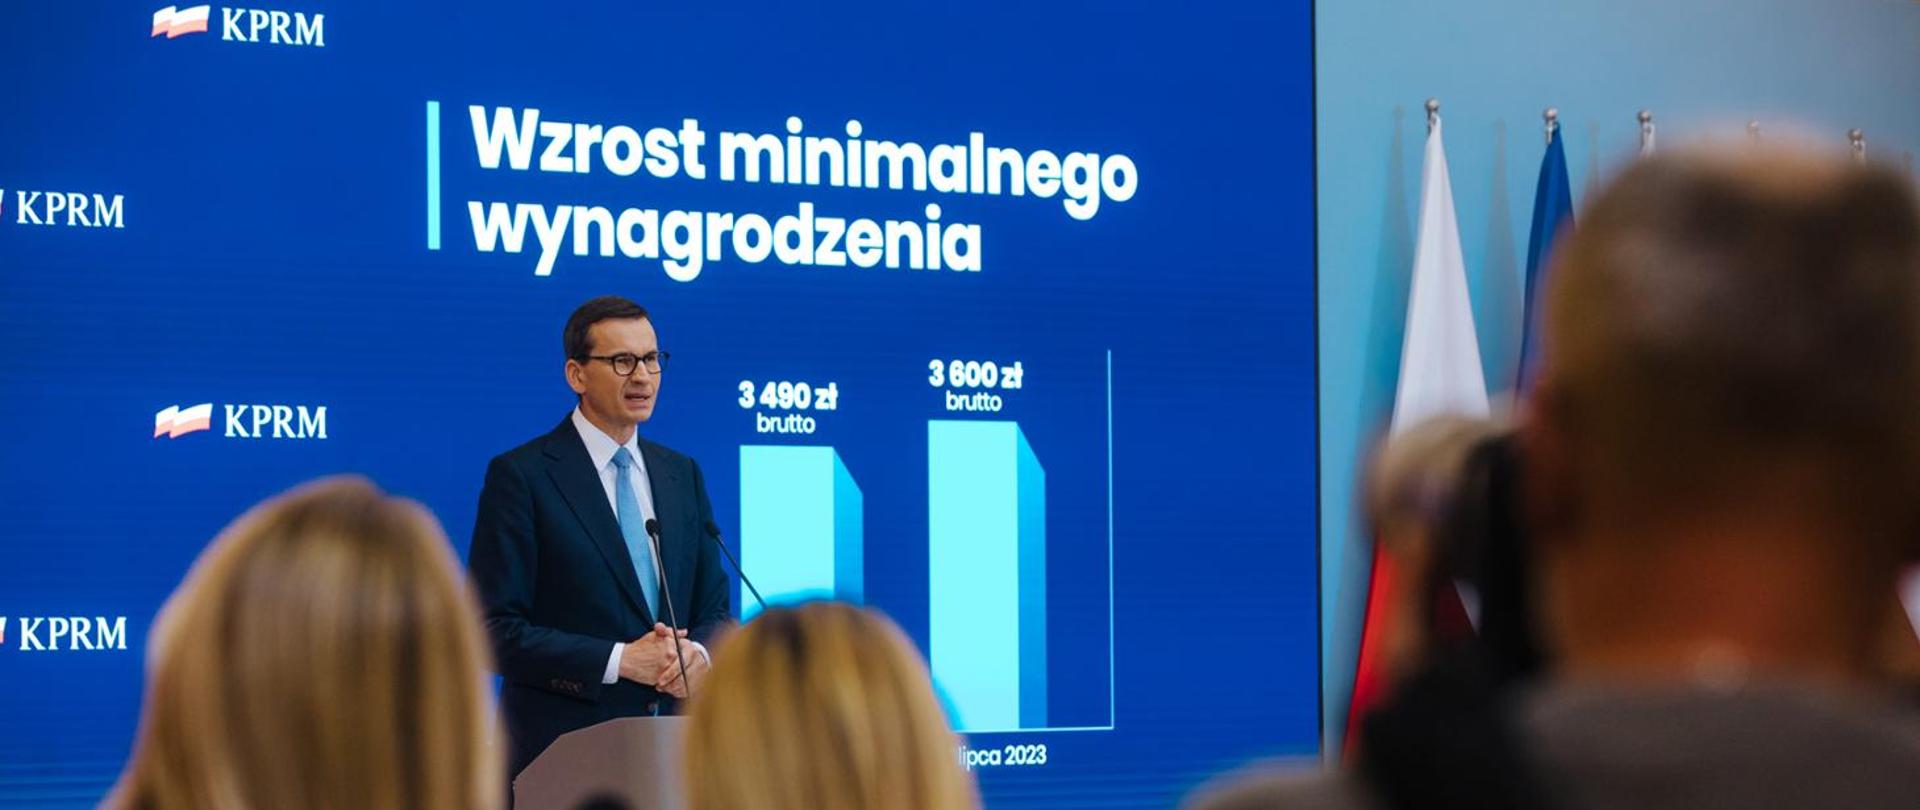 Premier Mateusz Morawiecki ogłosił wzrost minimalnego wynagrodzenia i minimalnej stawki godzinowej za pracę